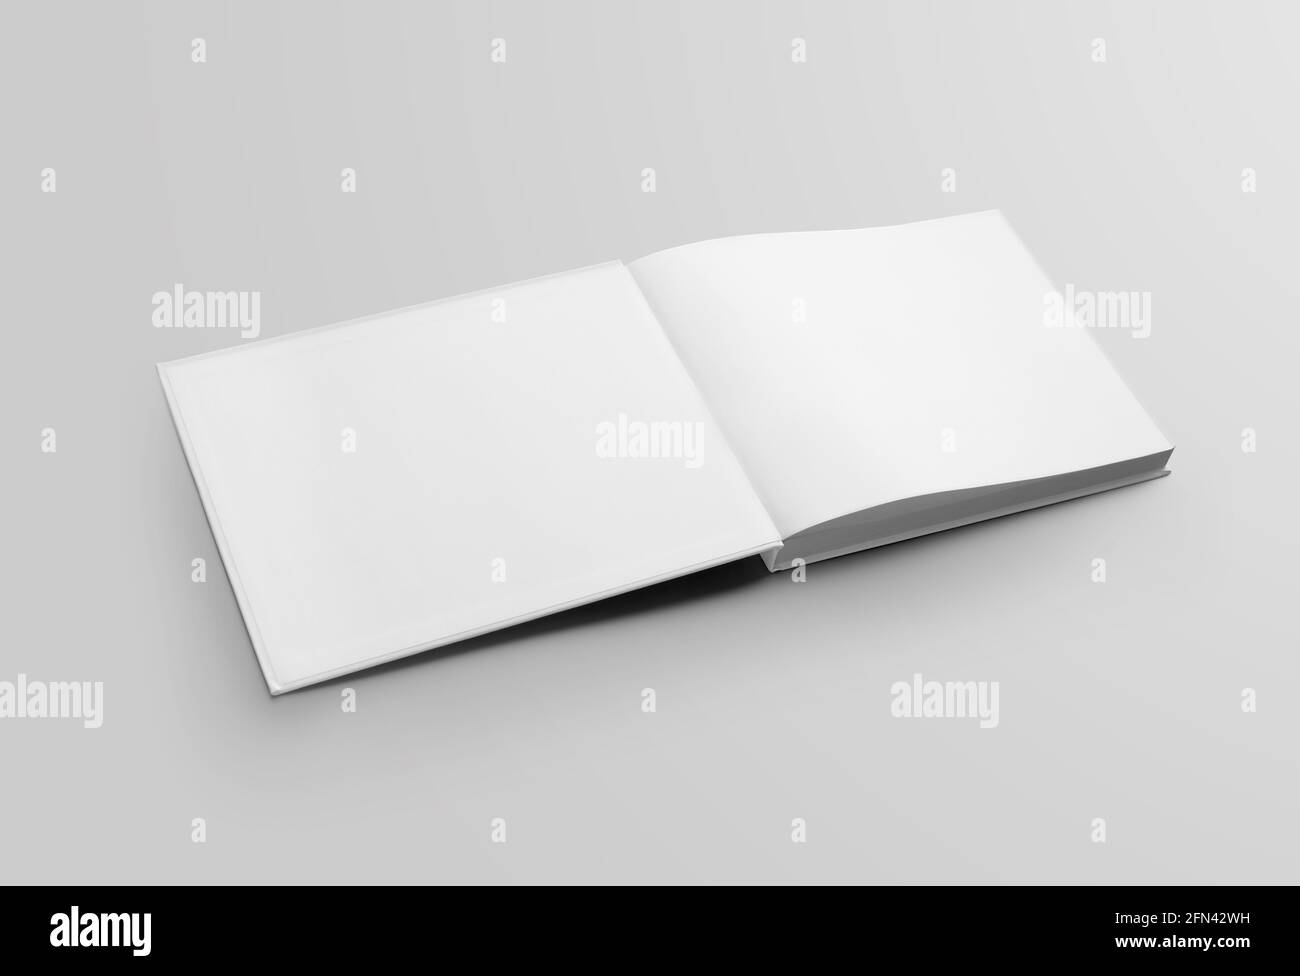 Maquette de livre blanc ouvert, première couverture rigide, isolée sur fond. Un modèle d'objet métier standard pour la lecture, avec des ombres réalistes, FO Banque D'Images